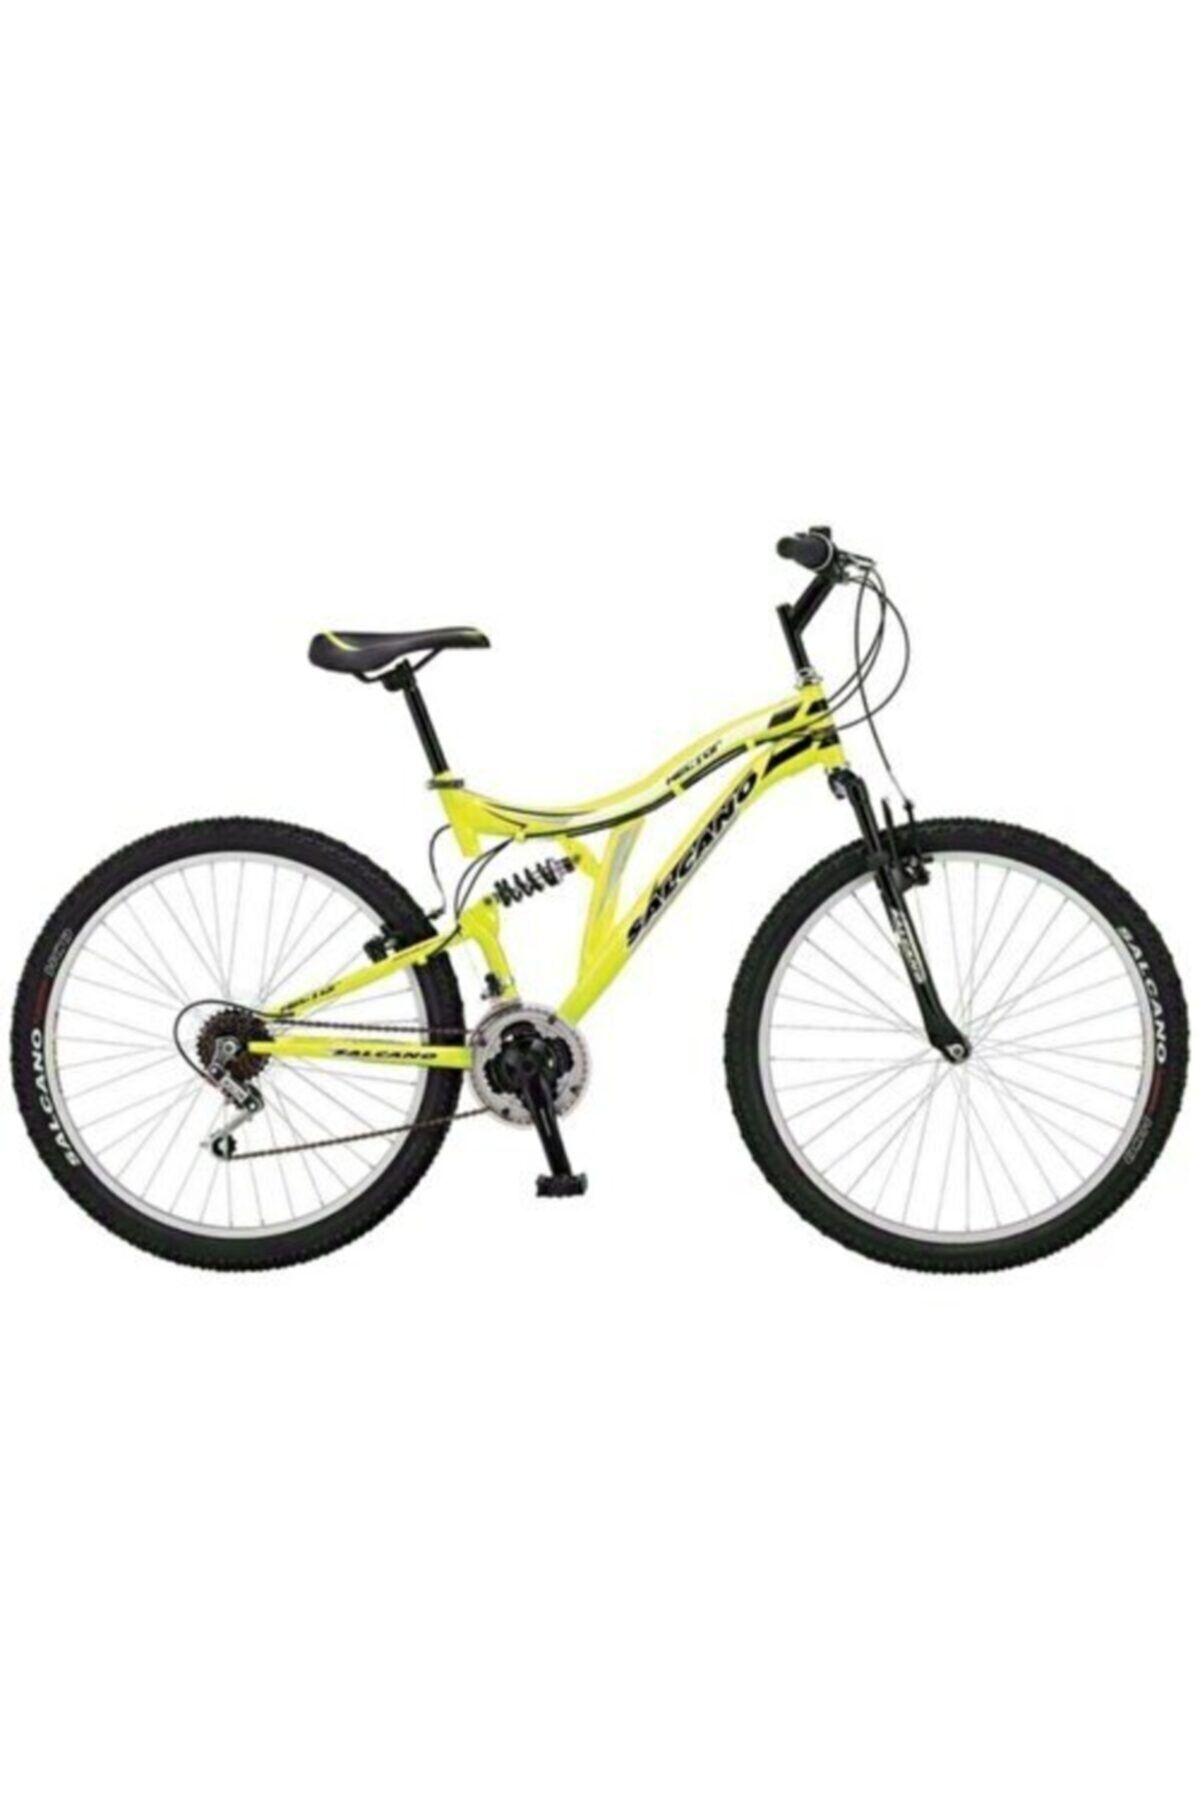 Salcano Hector 26 V 26 Jant Bisiklet-sarı Gri Siyah